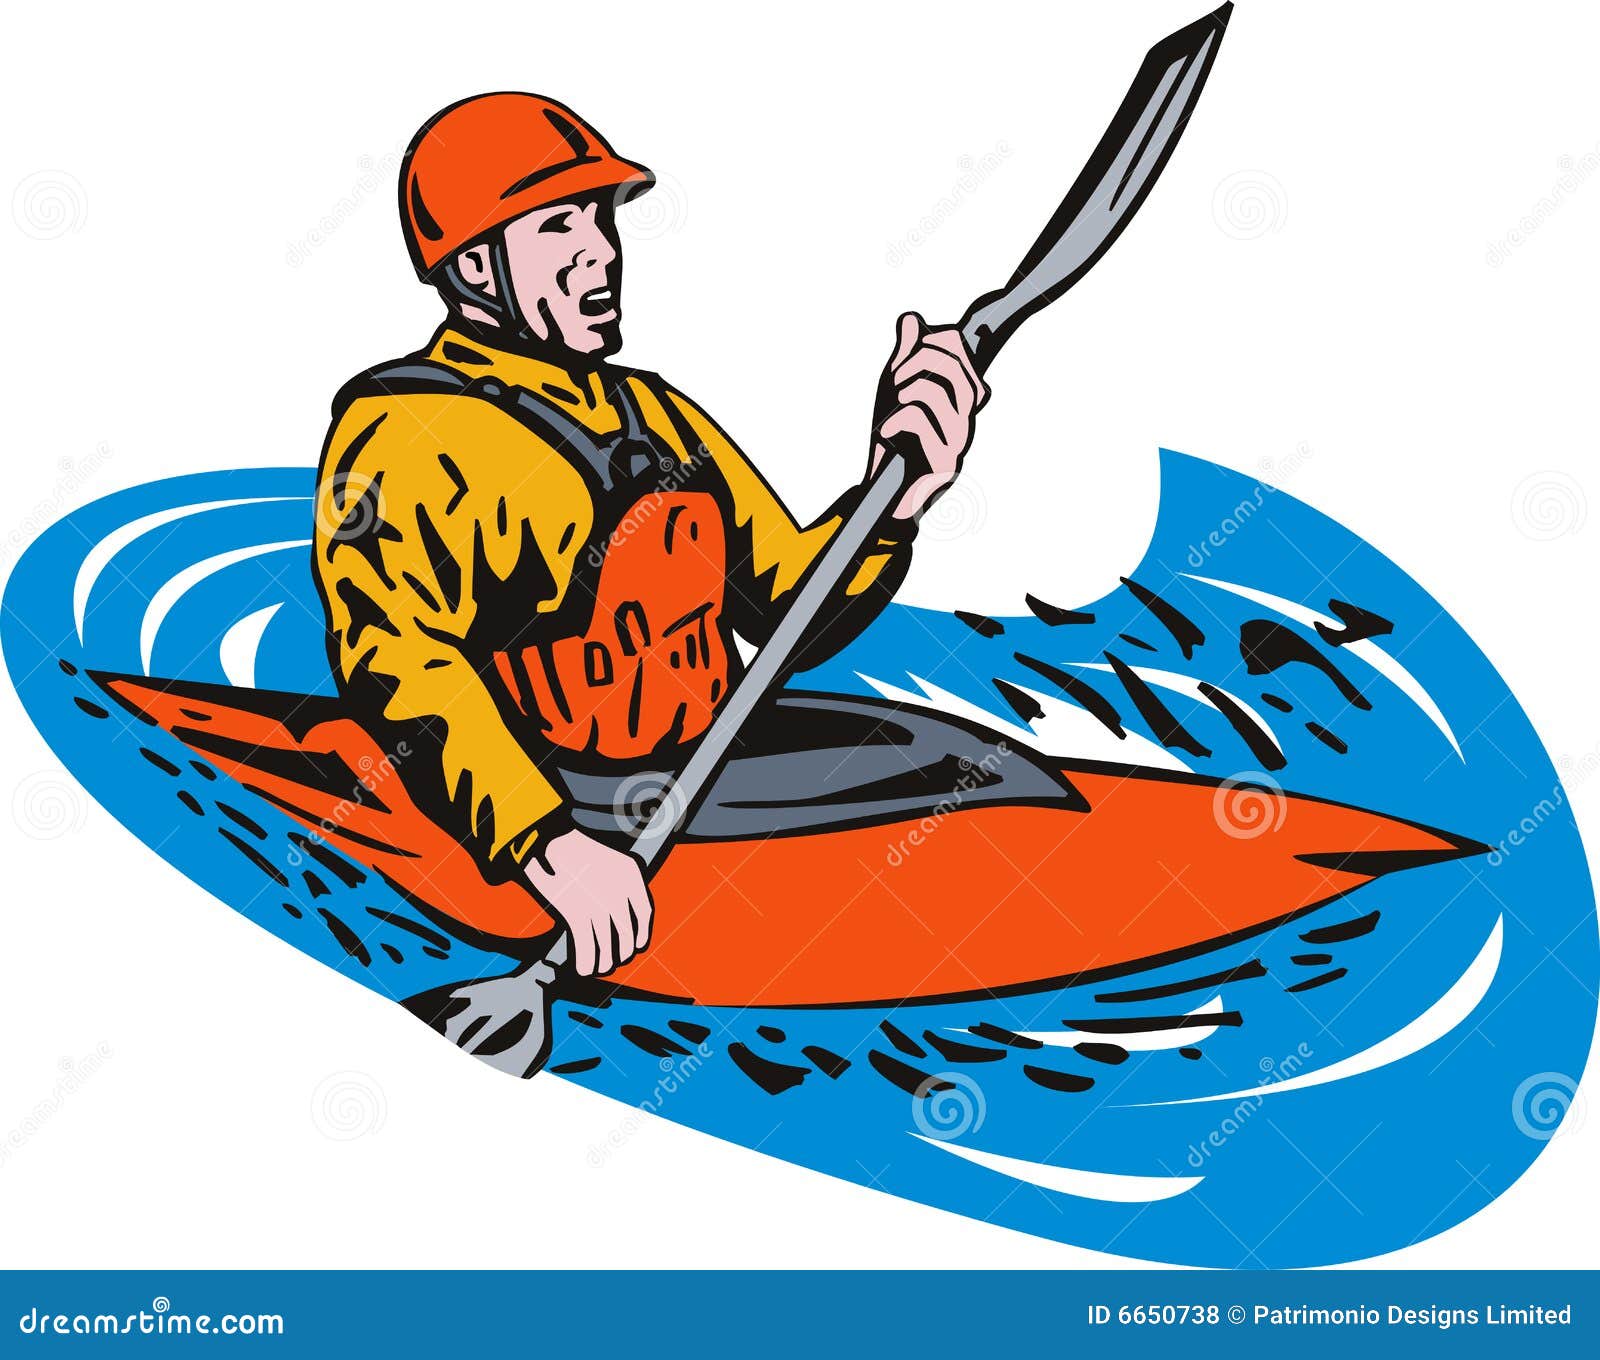 sea kayaking clipart - photo #22